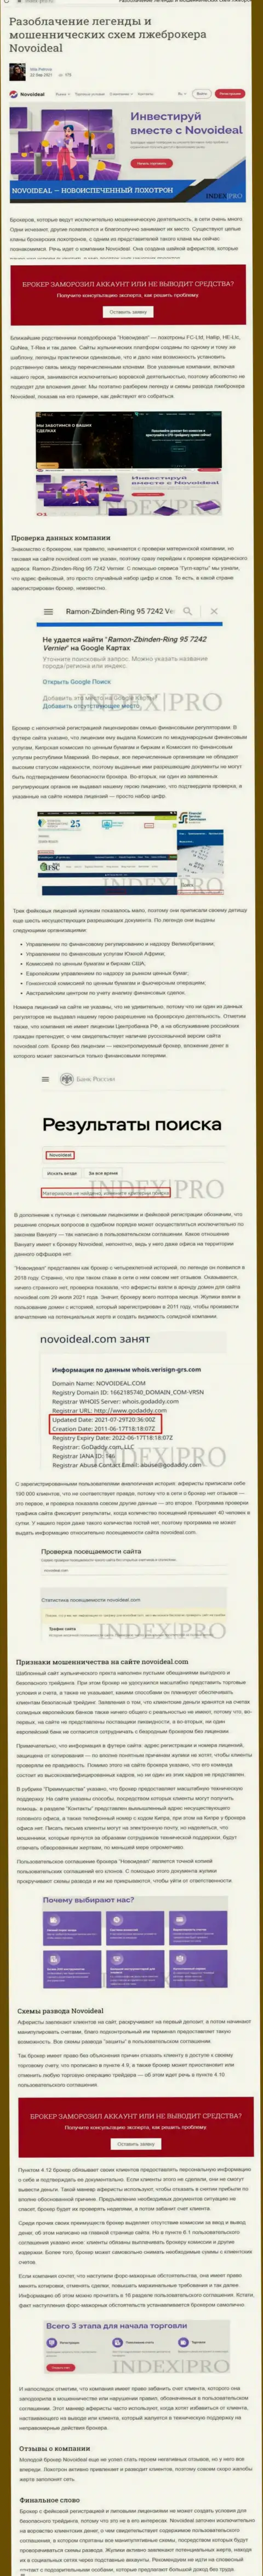 NovoIdeal - это КИДАЛЫ !!! статья со свидетельством противозаконных деяний